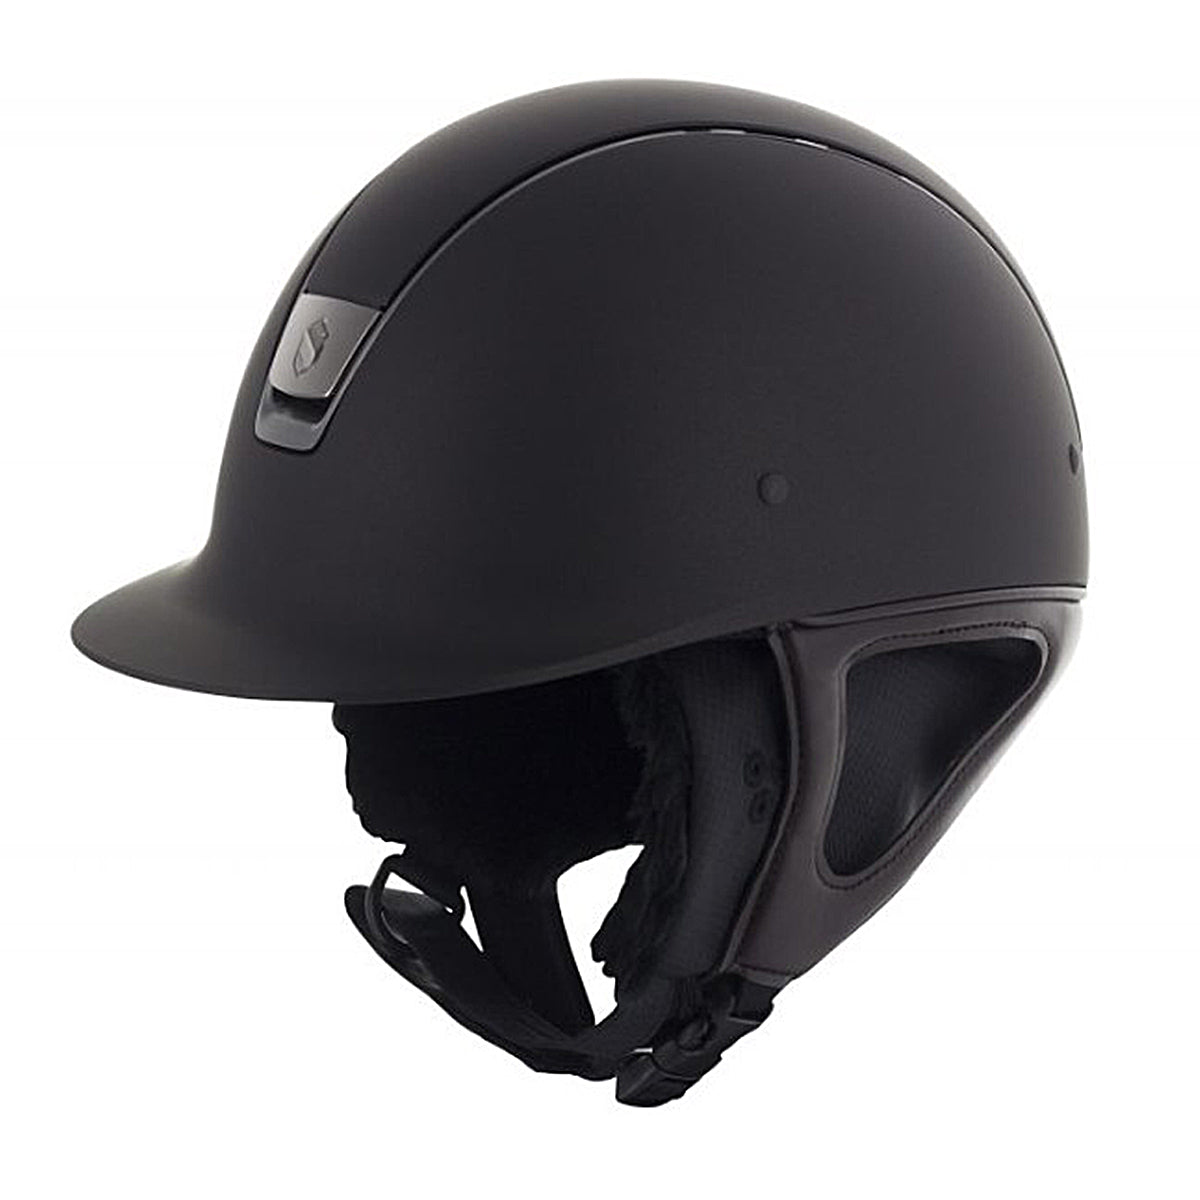 Samshield Winter Helmet Liner